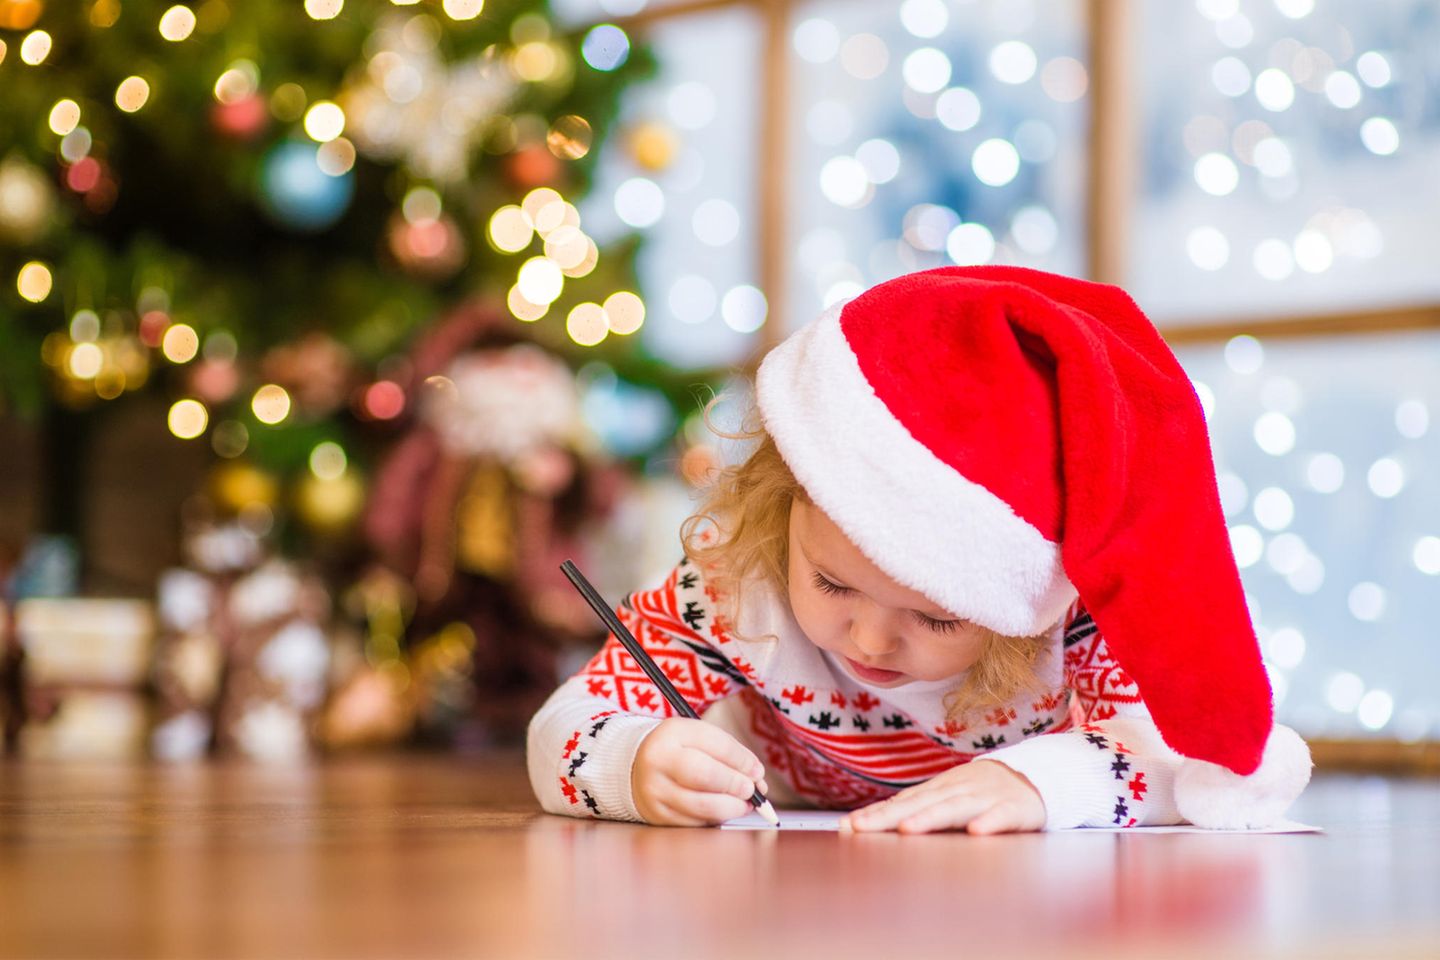 Adresse von Weihnachtsmann & Co.: Kind schreibt einen Brief vor dem Tannenbaum